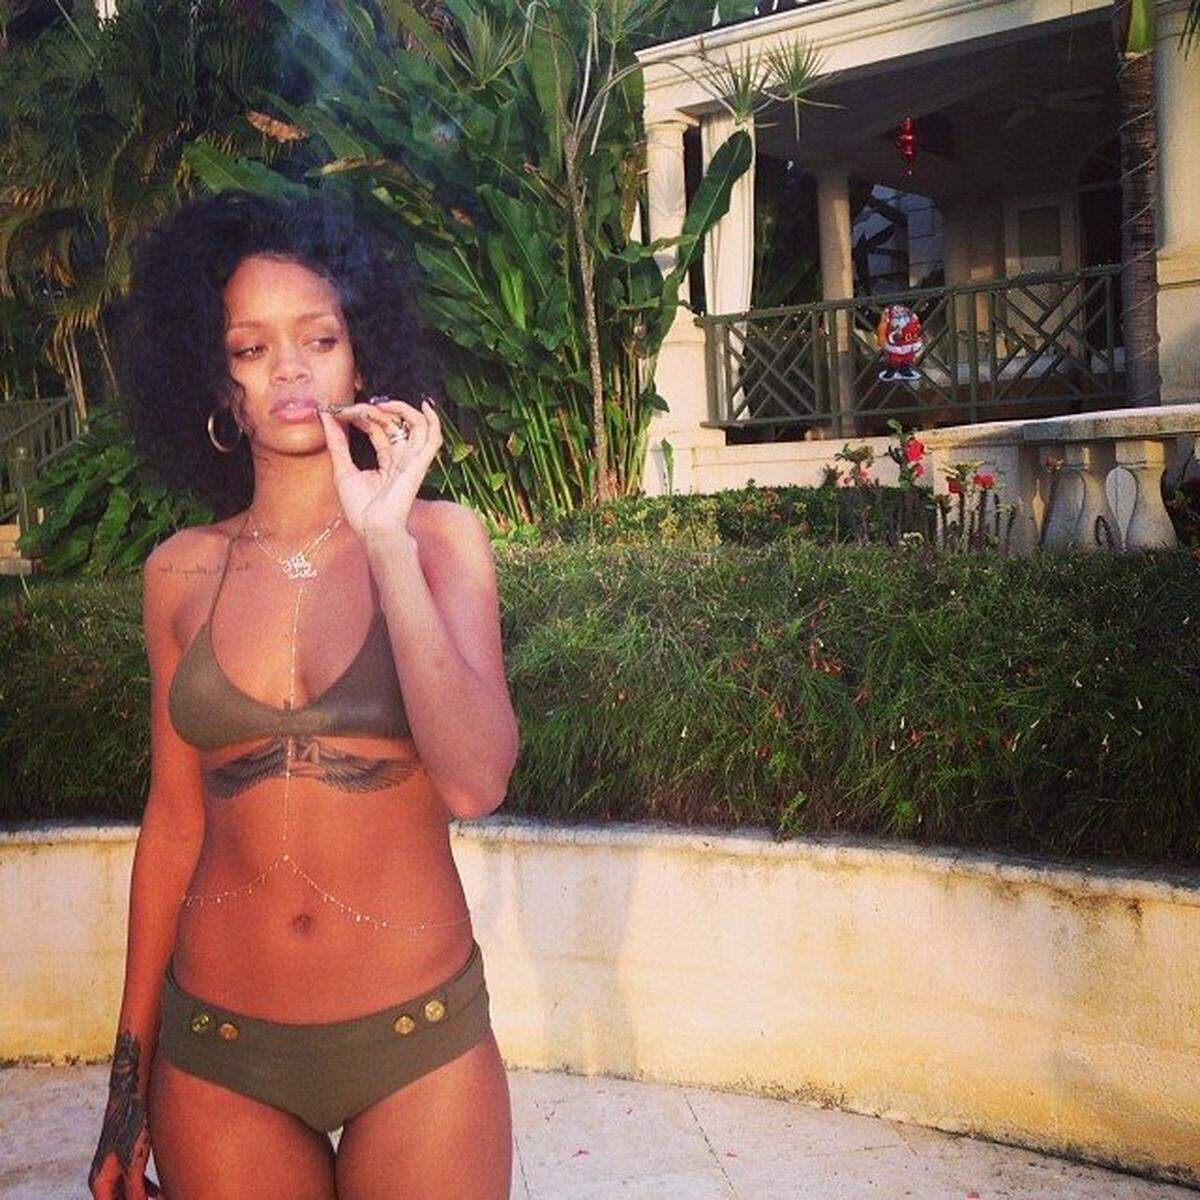 Ganz im Stil eines Bond Girls inszenierte sich Rihanna  hier mit diesem Bikini, der über Gürtel und Knöpfe verfügt.